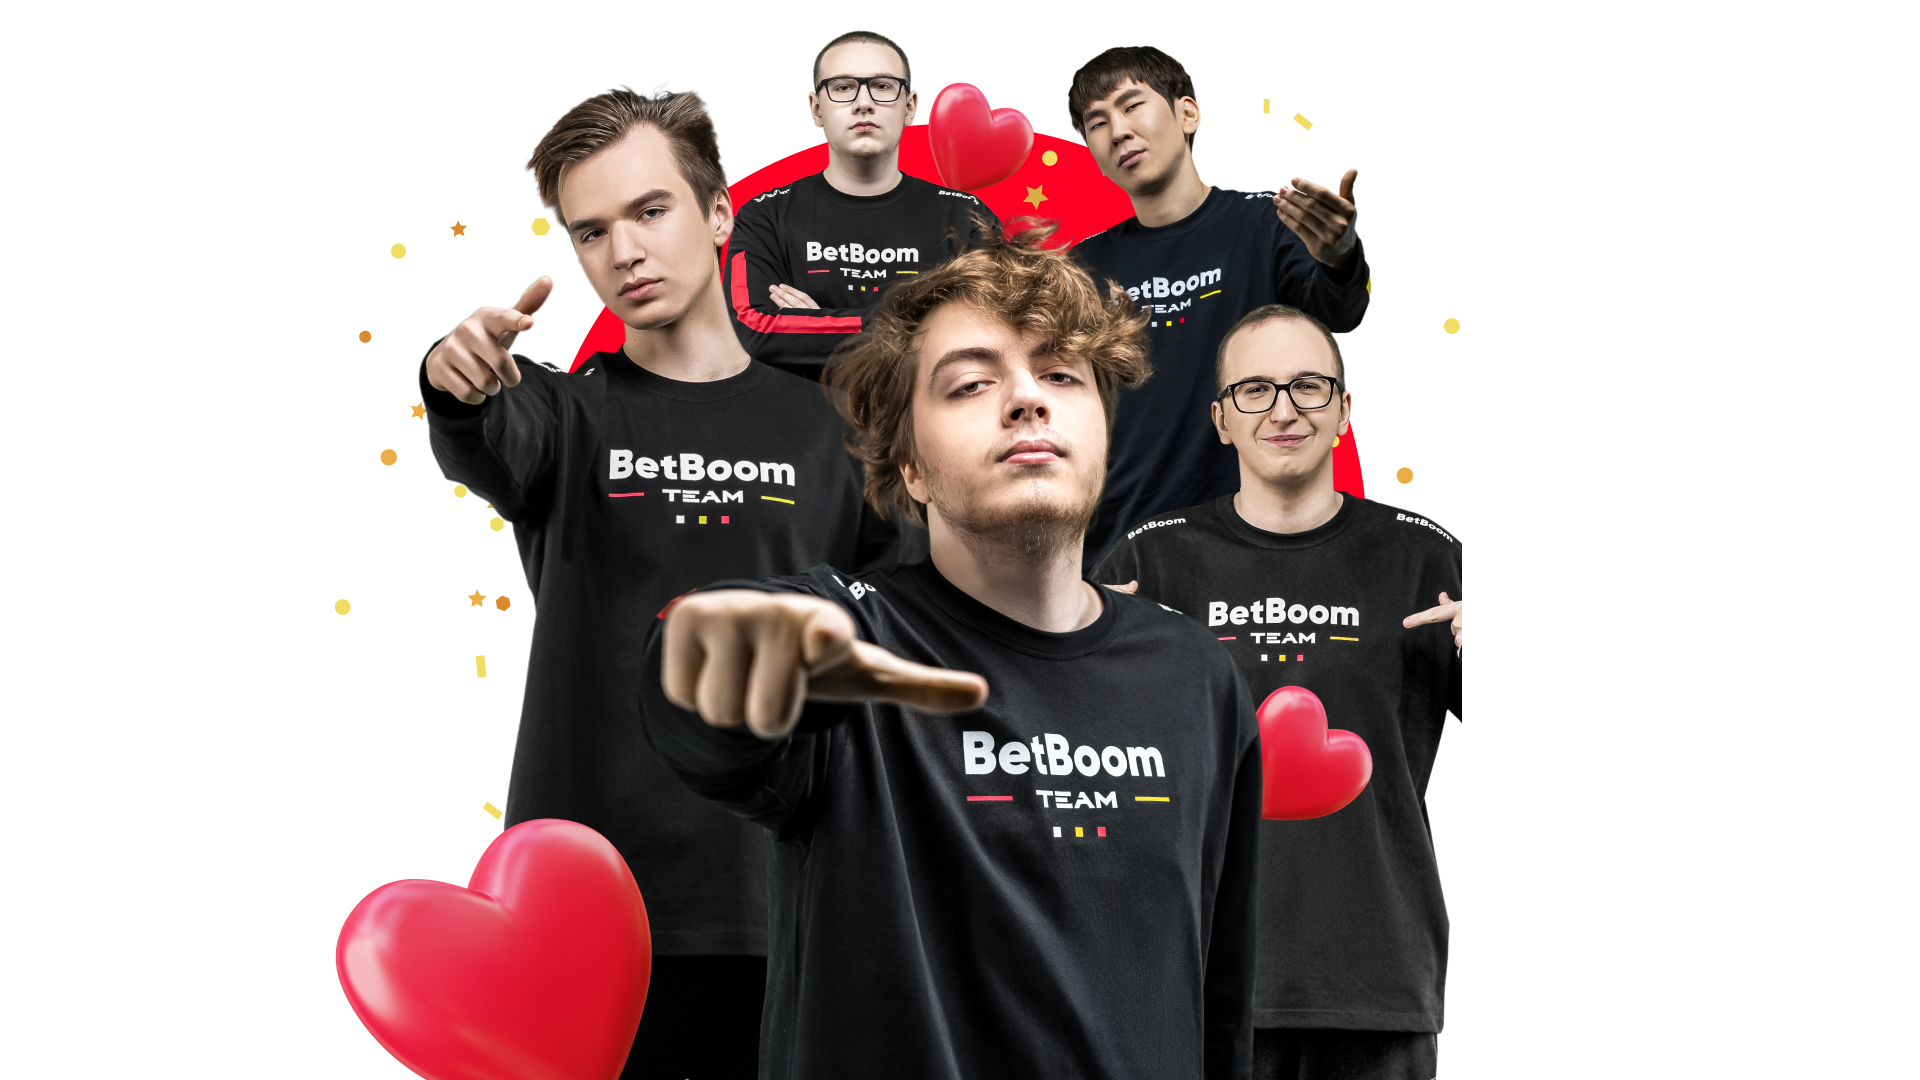 BetBoom Team выпустила валентинки с игроками состава по Dota 2